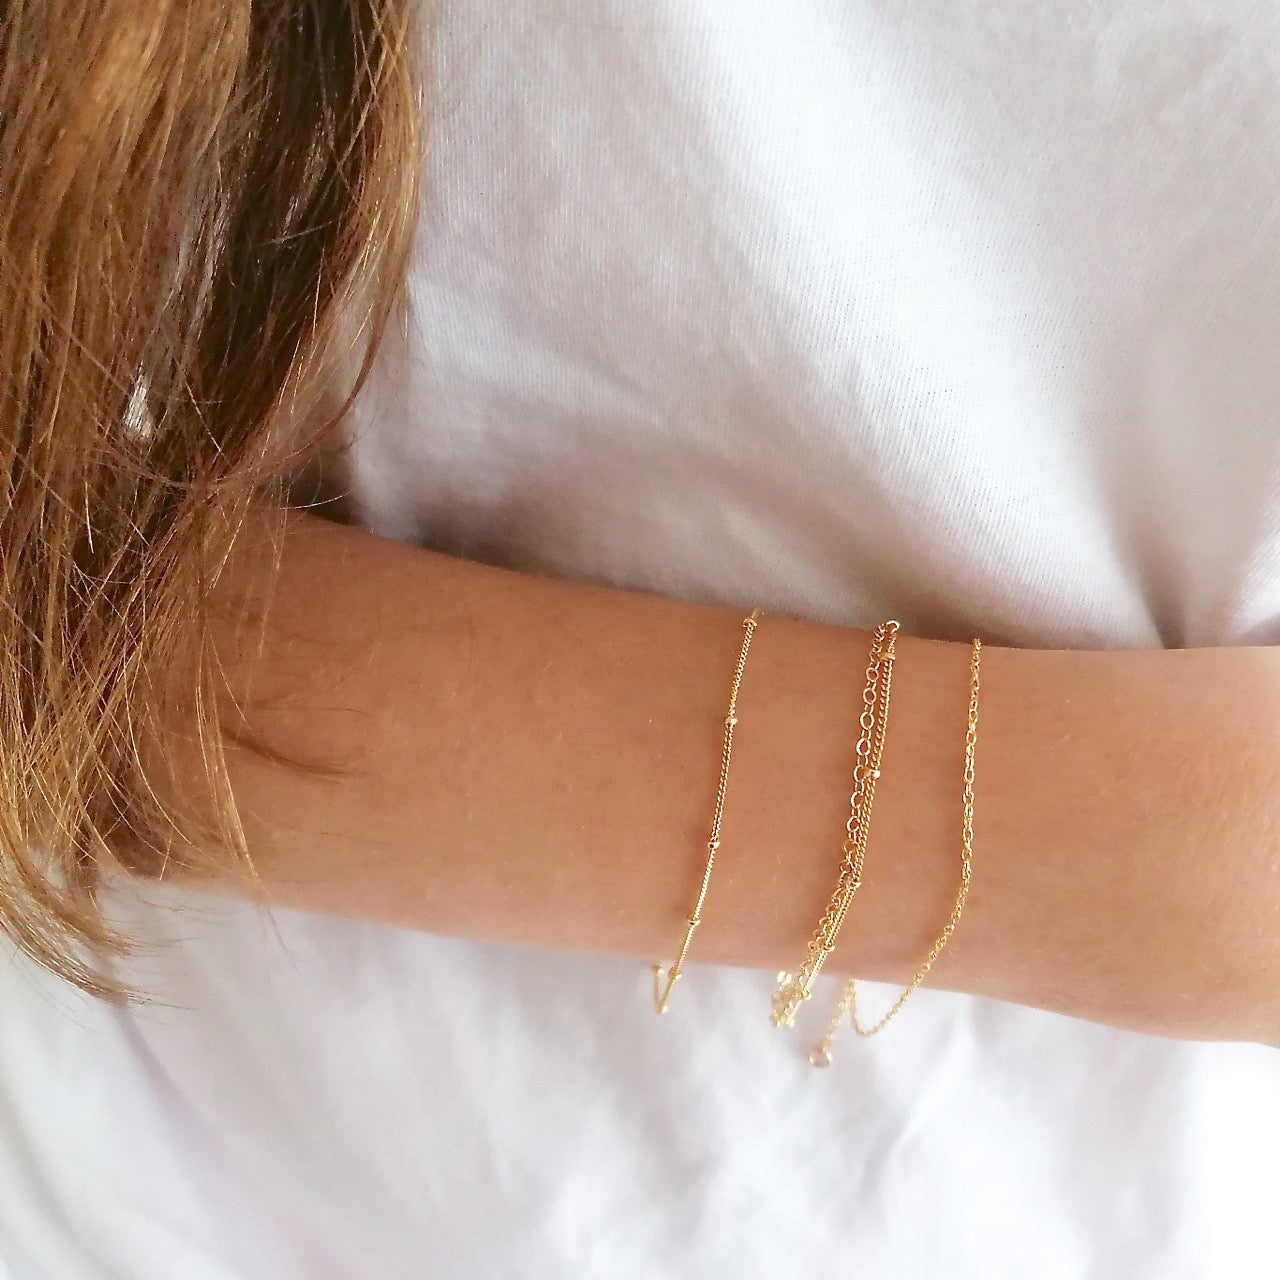 Gold satellite chain bracelet